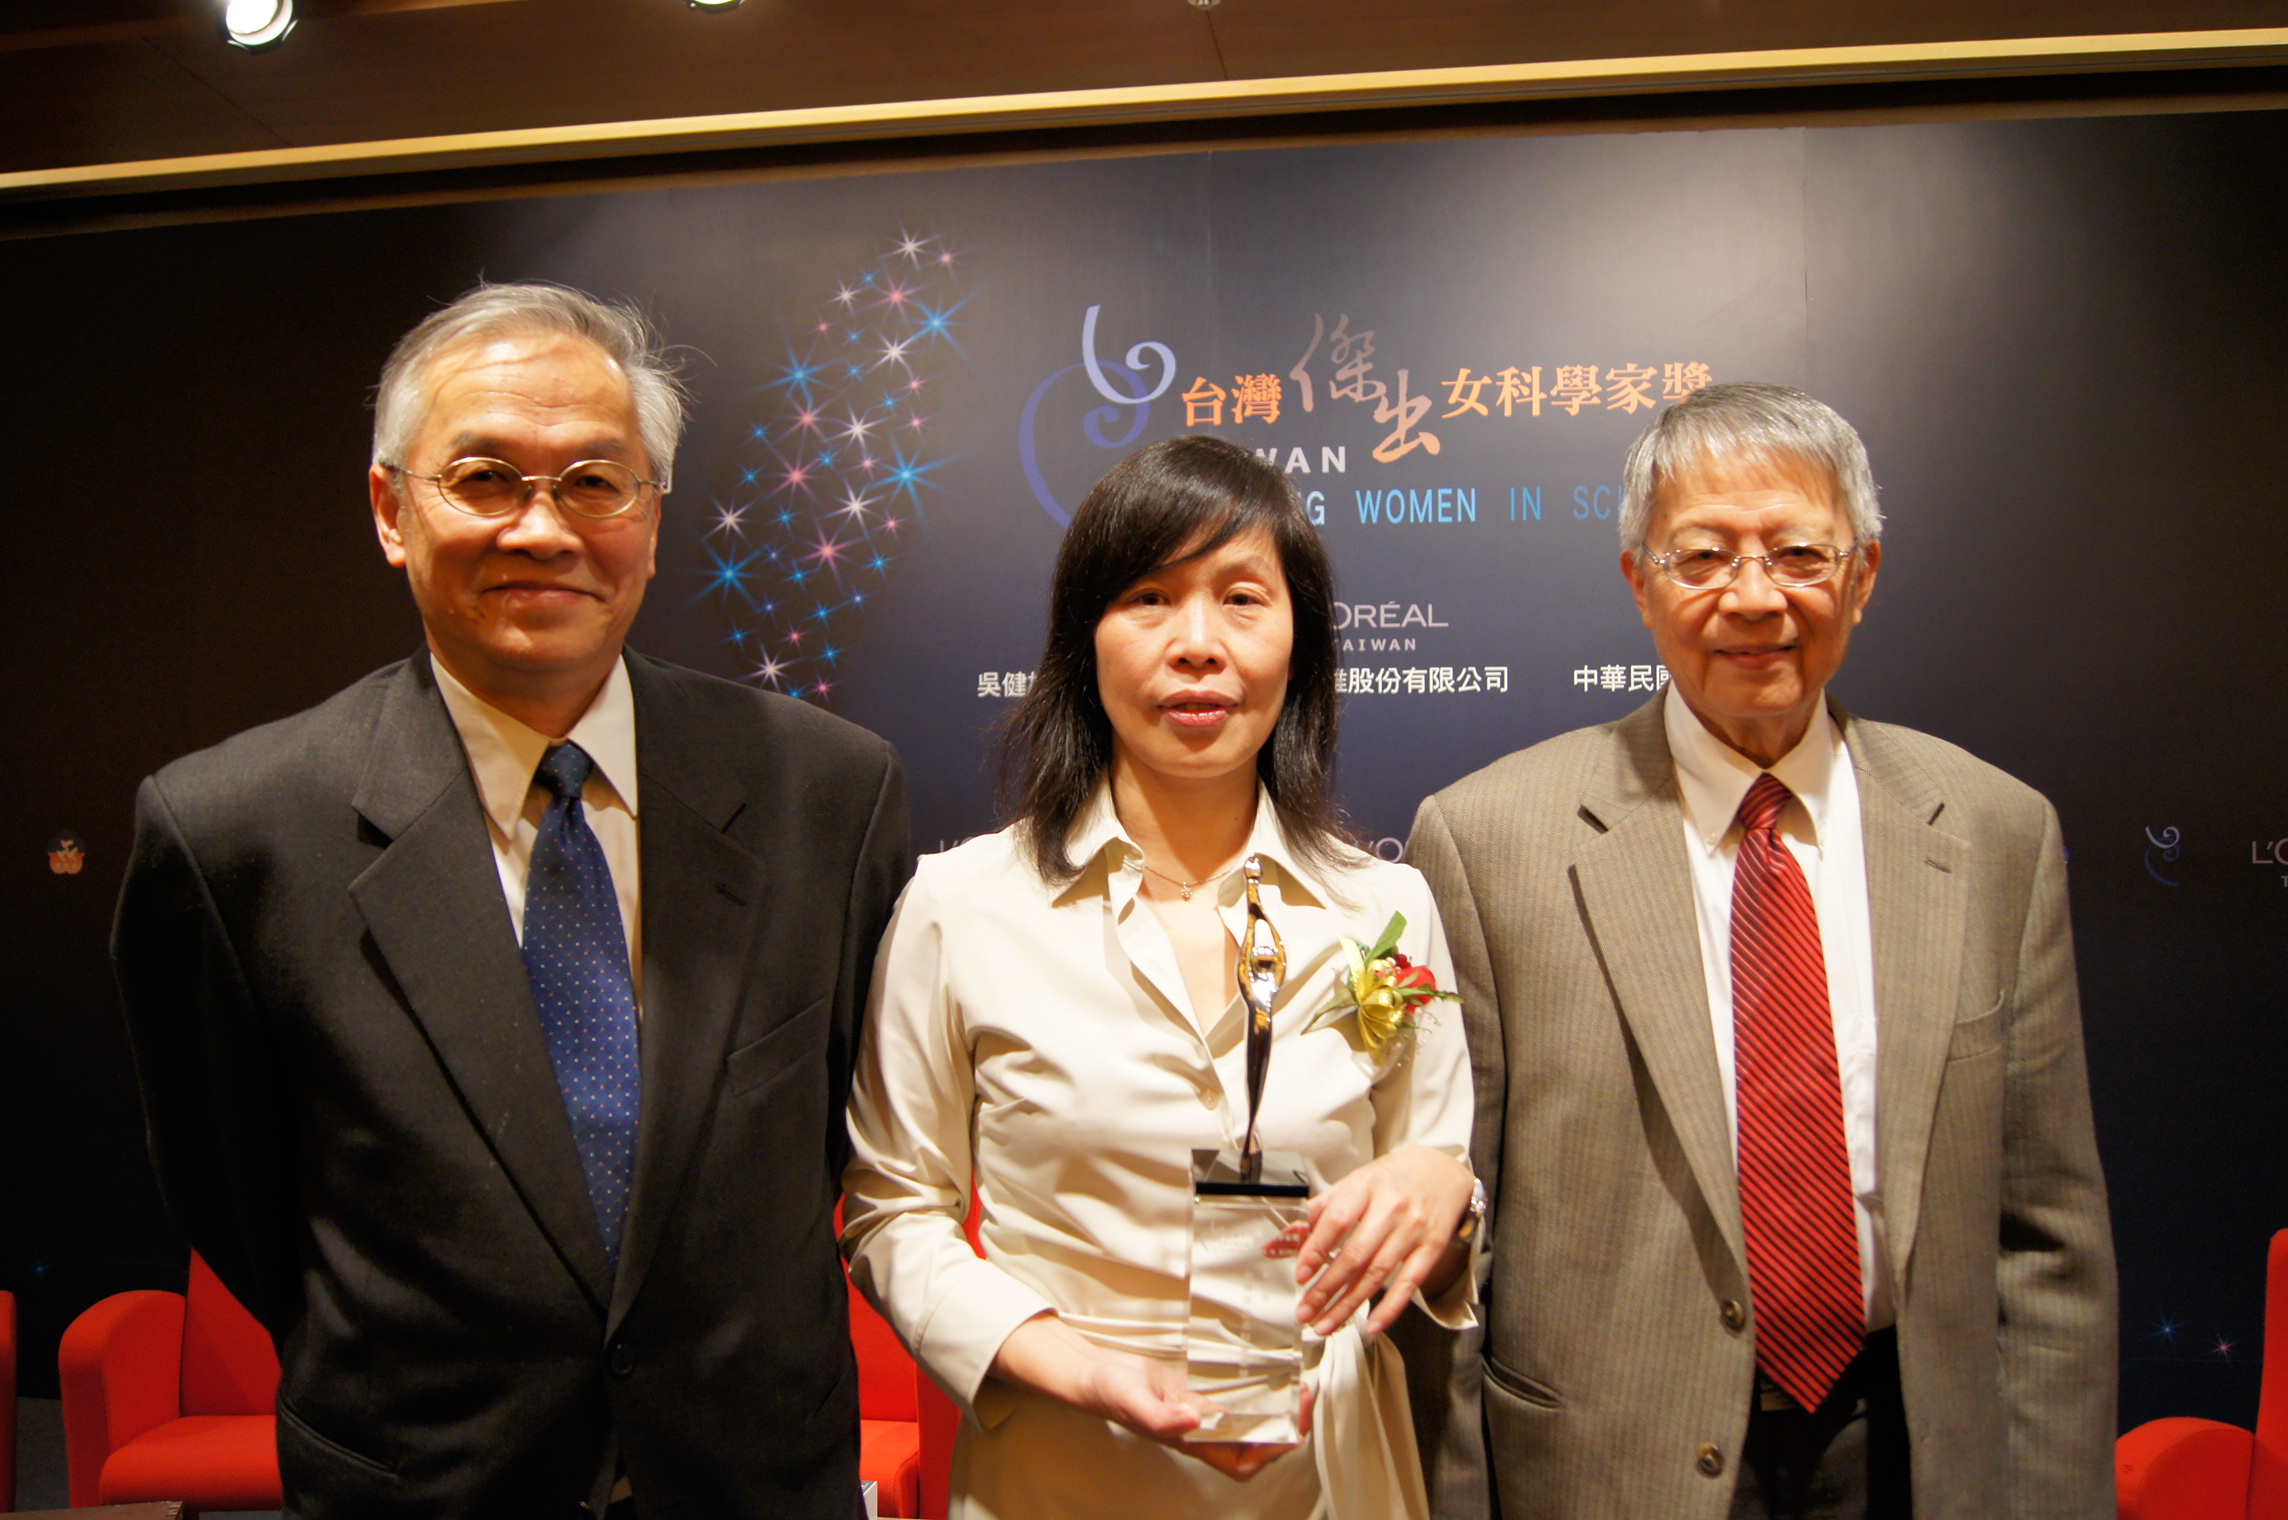 照片左起台灣聯合大學系統副校長葉永烜、馬國鳳教授、中研院副院長劉兆漢。朱韻璇攝